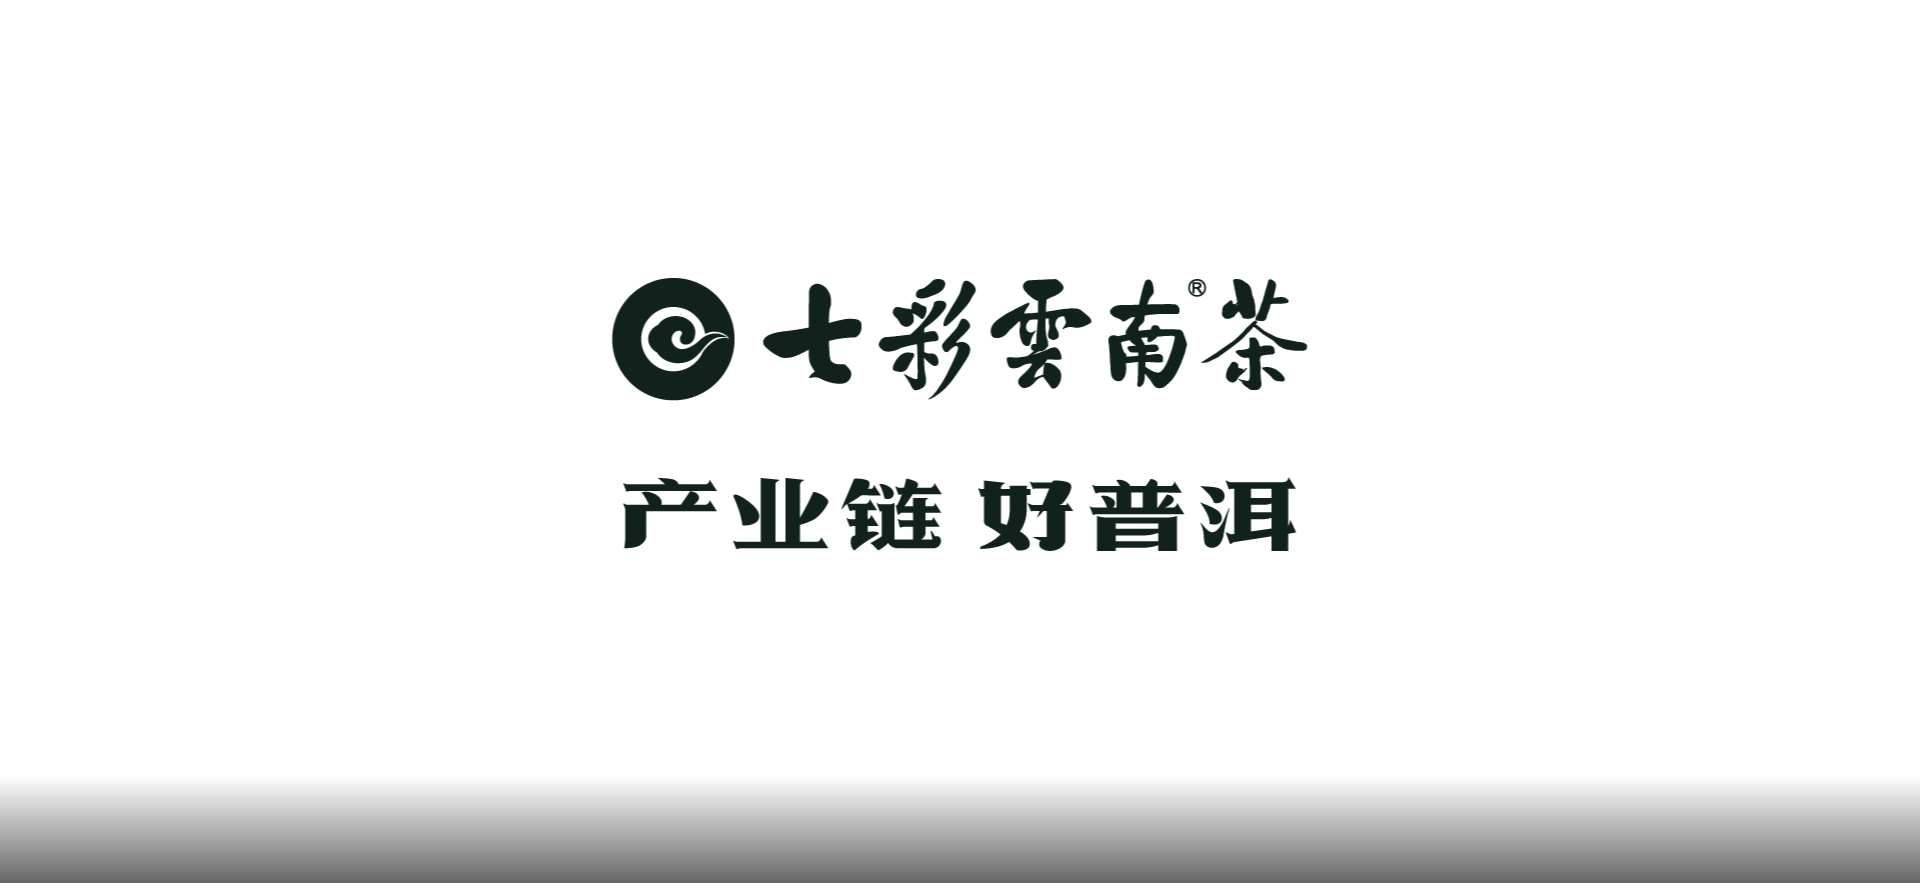 七彩云南®茶——品牌长画卷背后的创作故事（六）